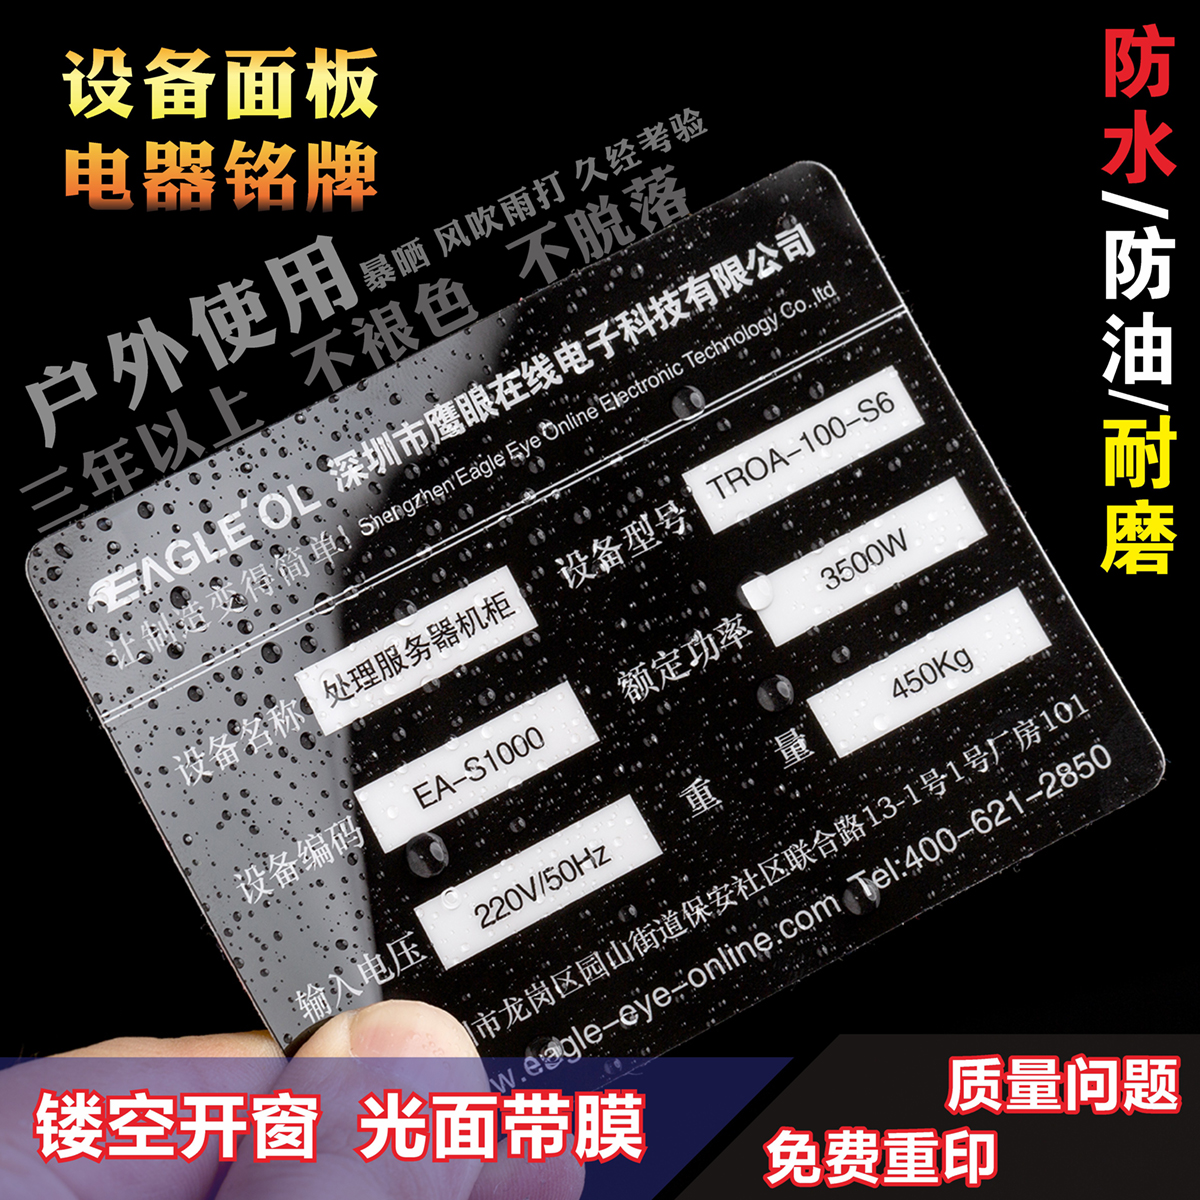 定制3M胶磨砂PVC不干胶印刷塑料片机械面板按键铭牌贴纸警示标签